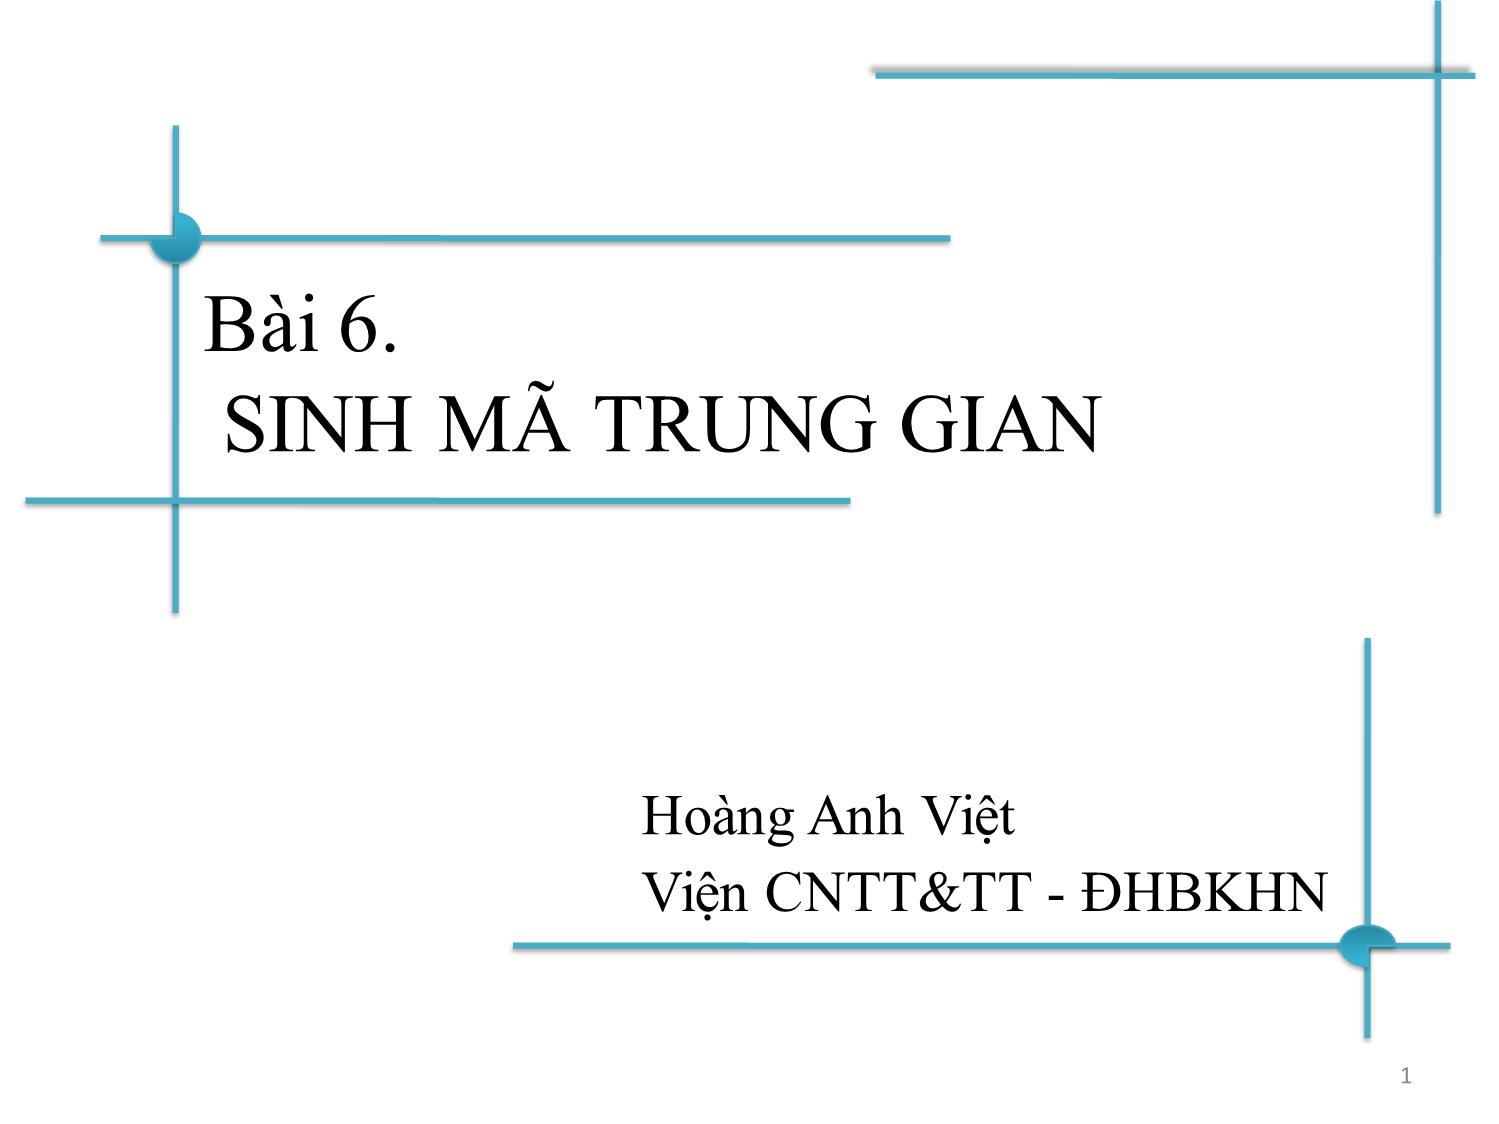 Bài giảng Chương trình dịch - Bài 6: Sinh mã trung gian - Hoàng Anh Việt trang 1